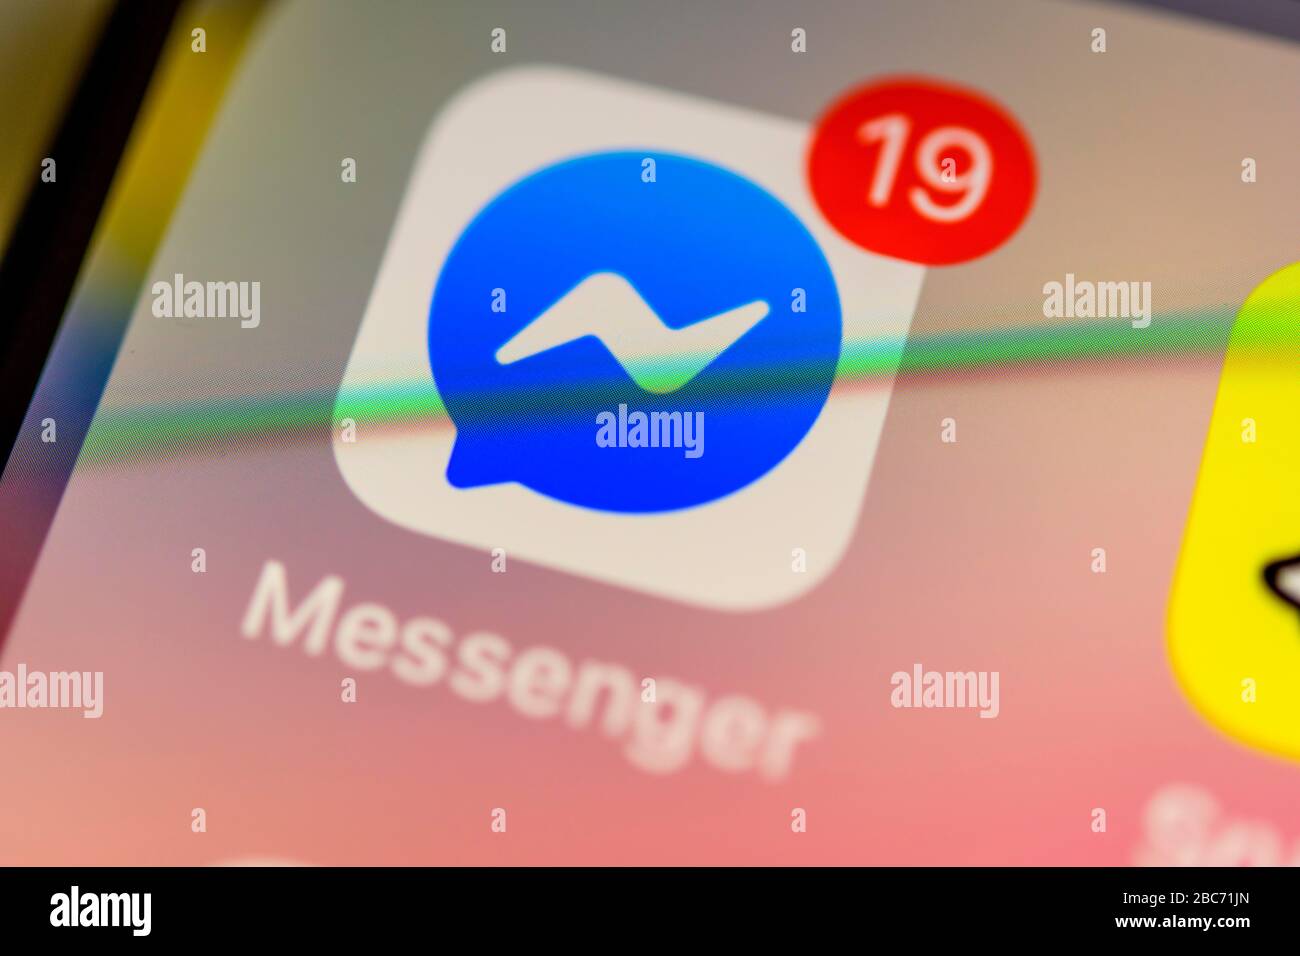 Facebook-Messenger-App, soziales Netzwerk, App-Symbol, Anzeige auf dem Display von Handy, Smartphone, Detail, Vollformat Stockfoto